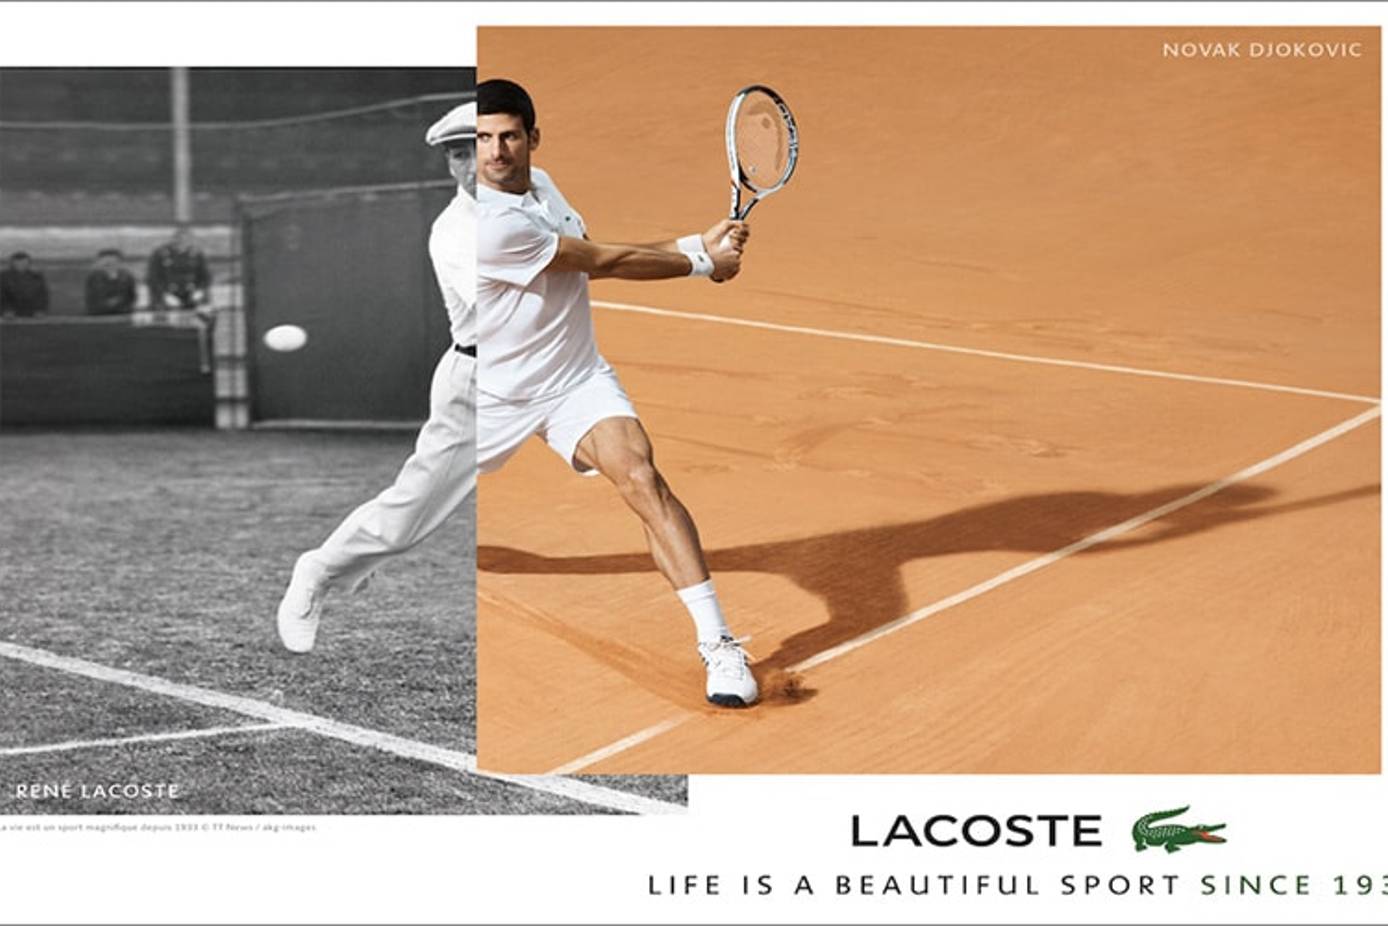 Forstyrre Tæller insekter tåbelig Novak Djokovic joins Lacoste's roster of athletes